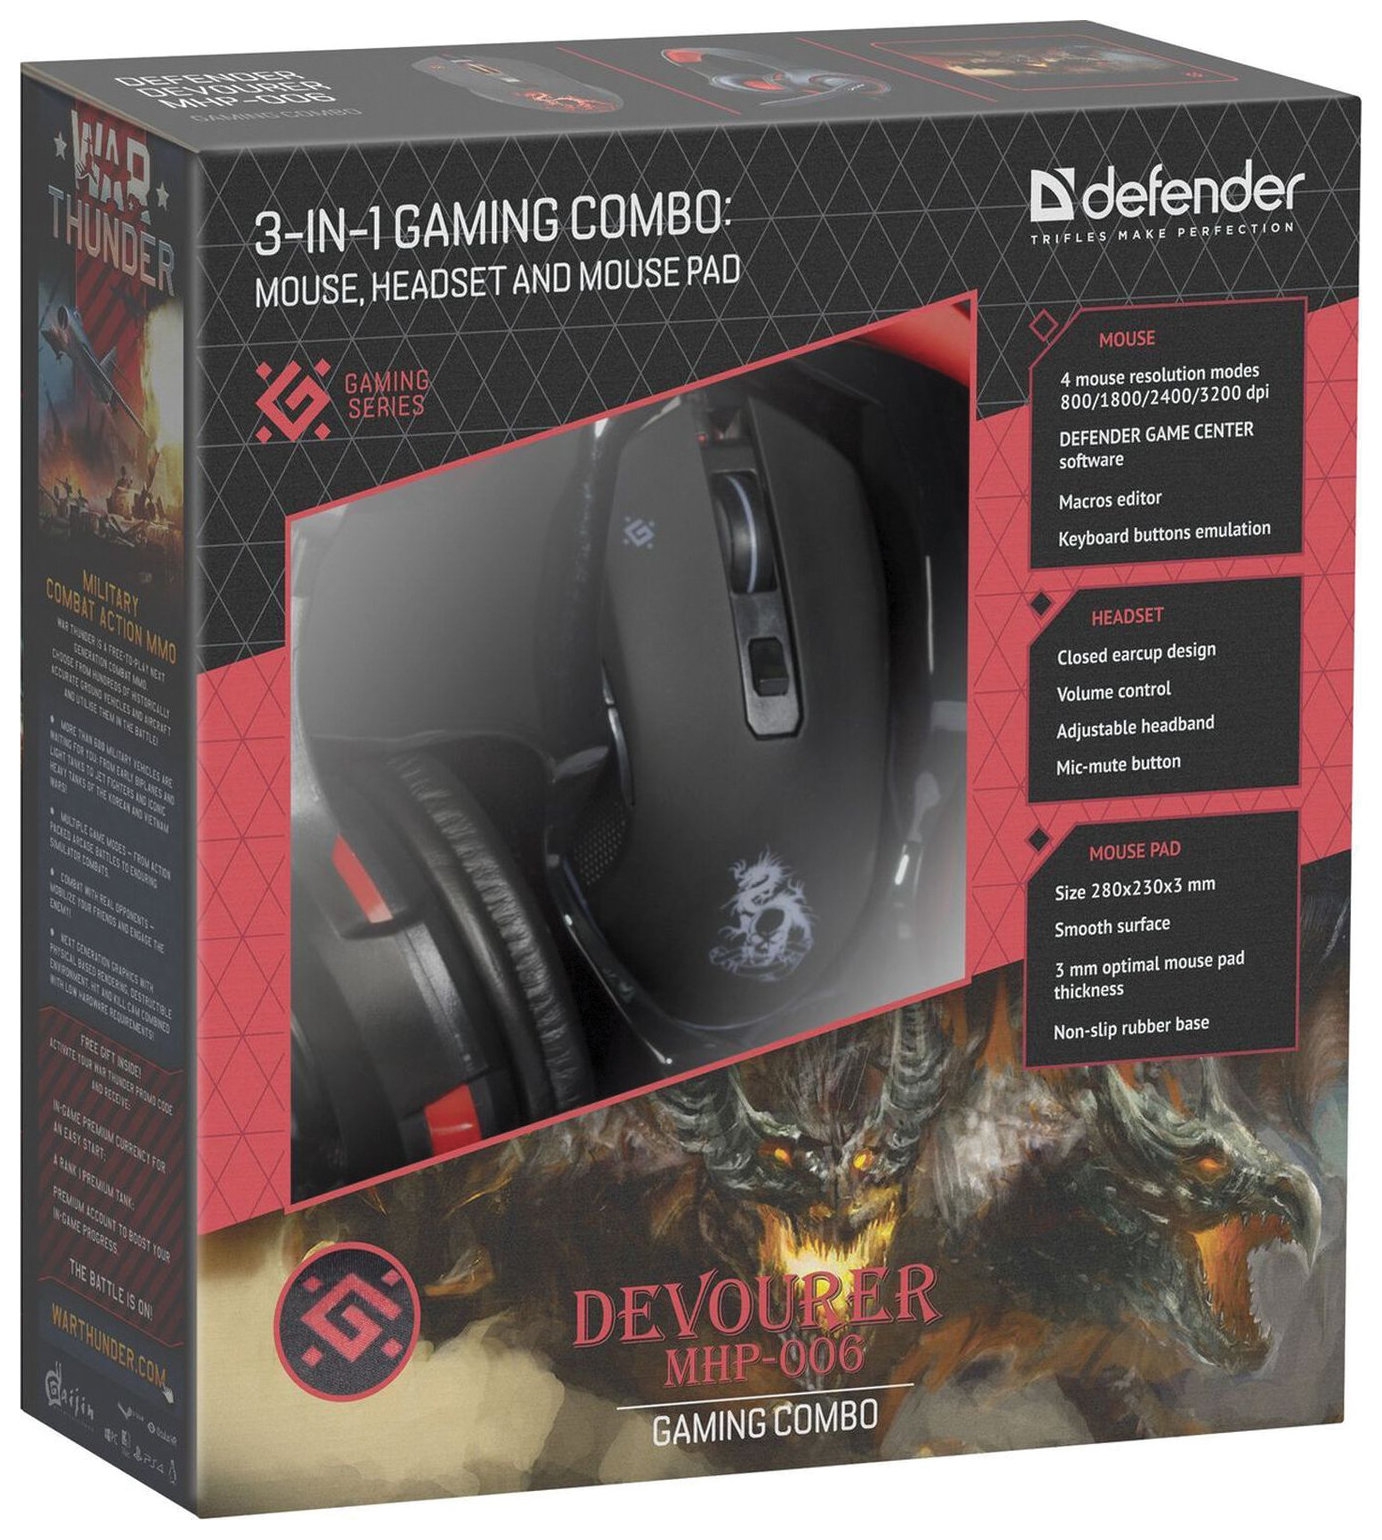 Набор проводной игровой Defender Devourer Mhp-006, гарнитура, мышь 5 кнопок + 1 колесо-кнопка, коврик, черный, 52006